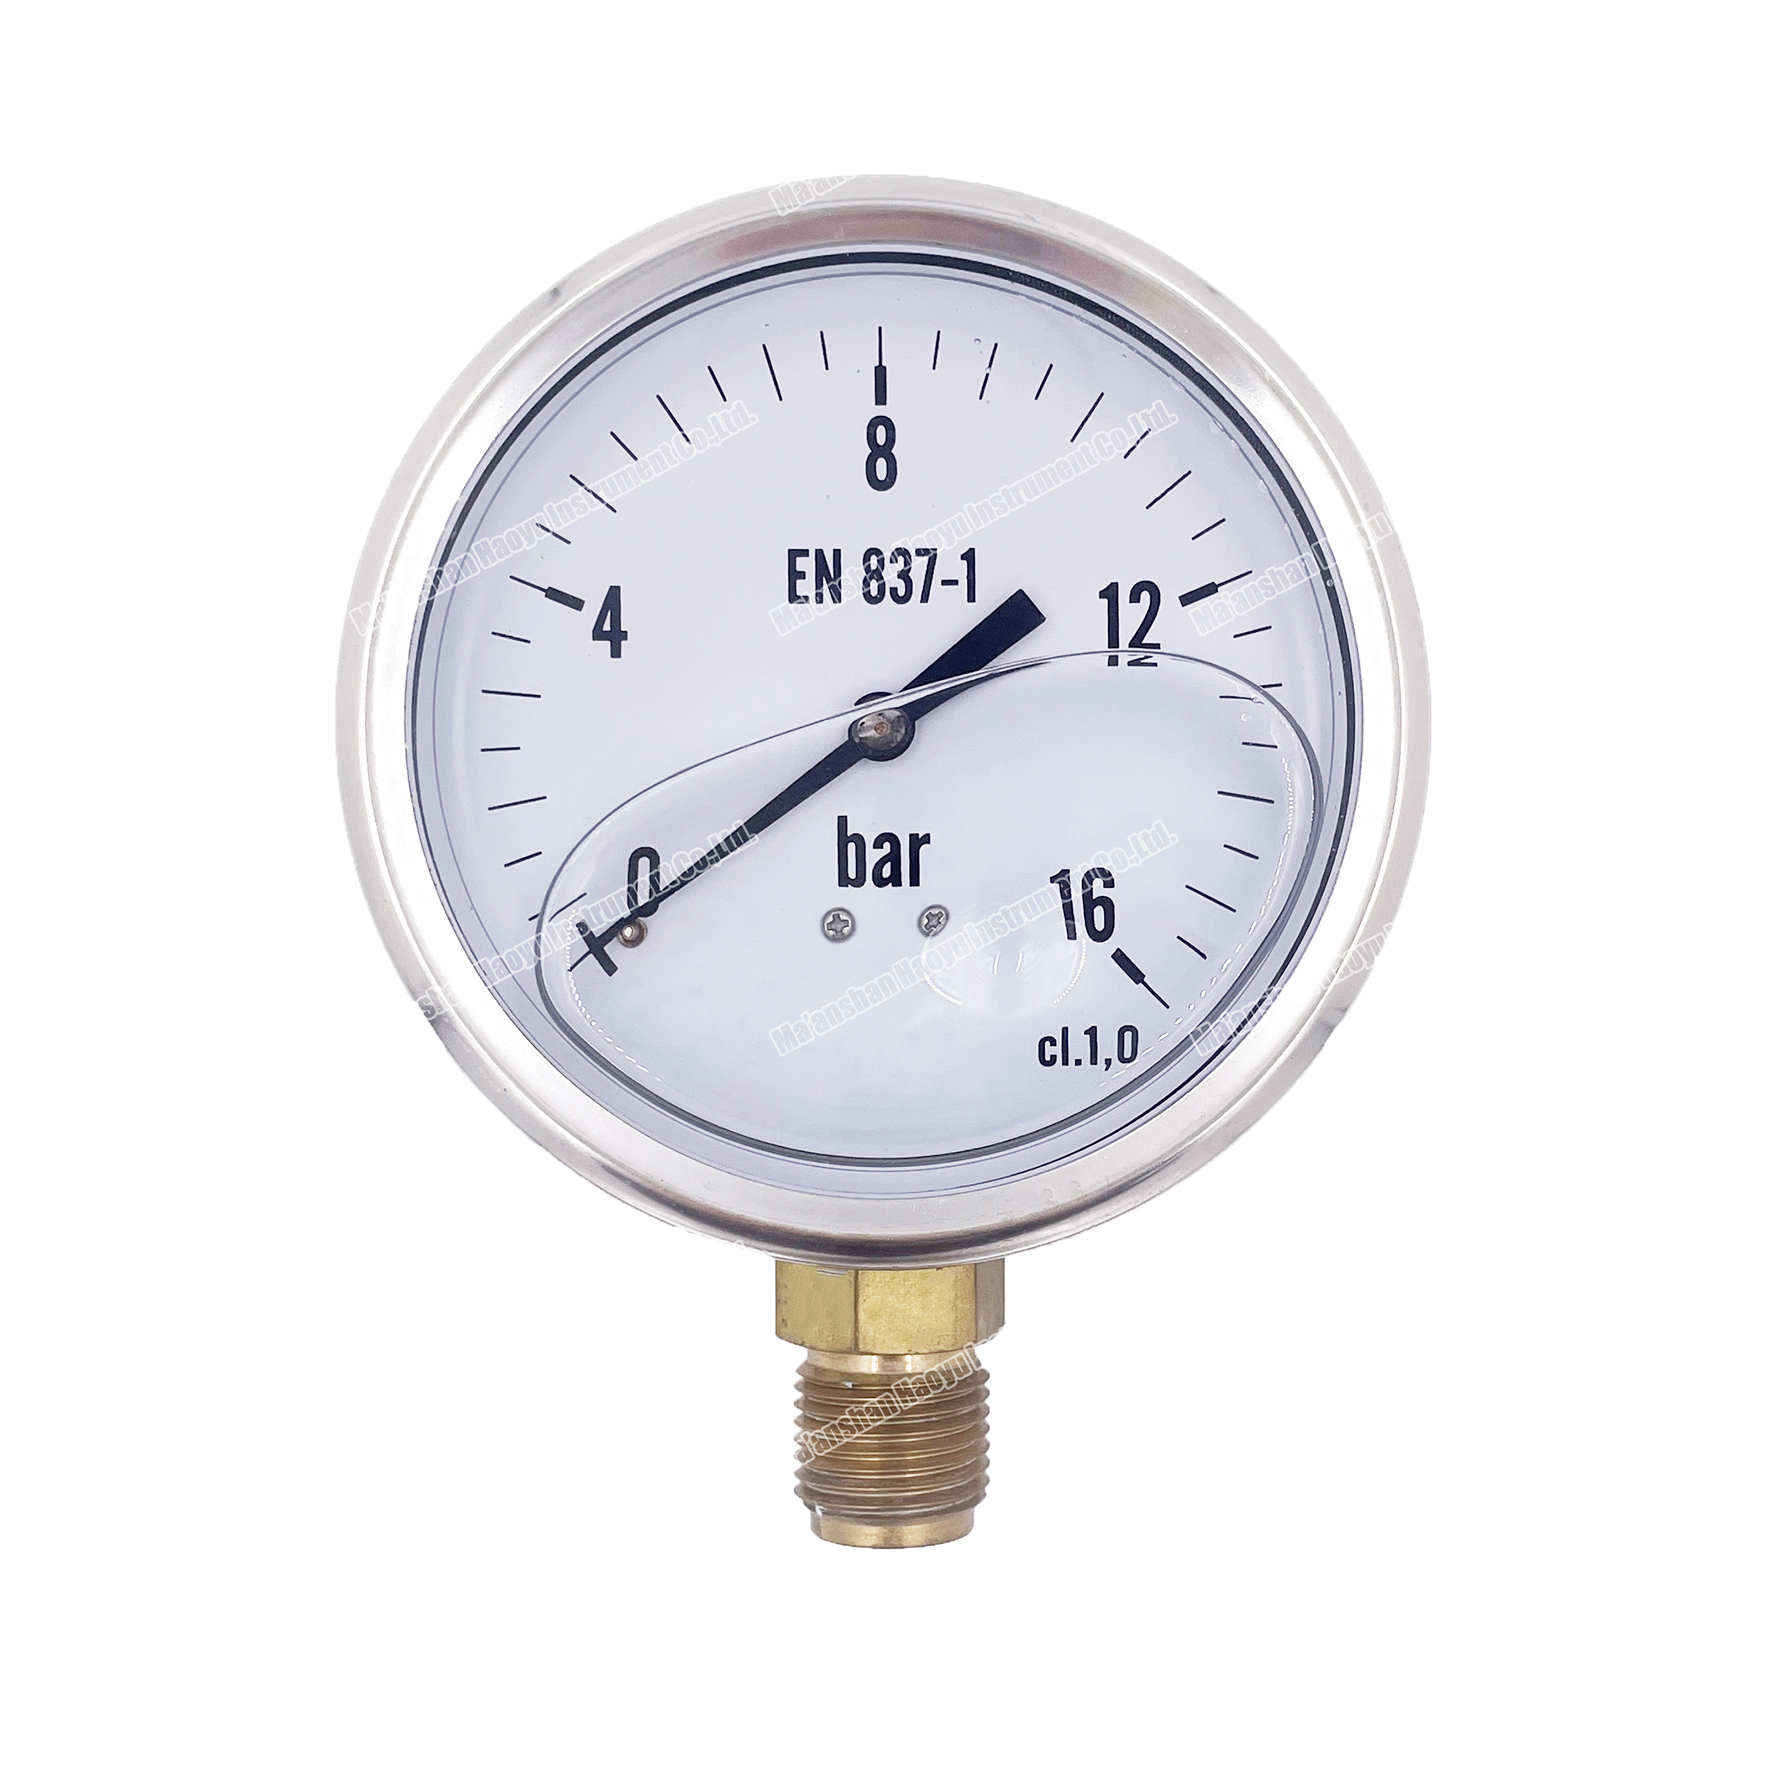 Y100 radial stainless steel aseismatic oil pressure gauge